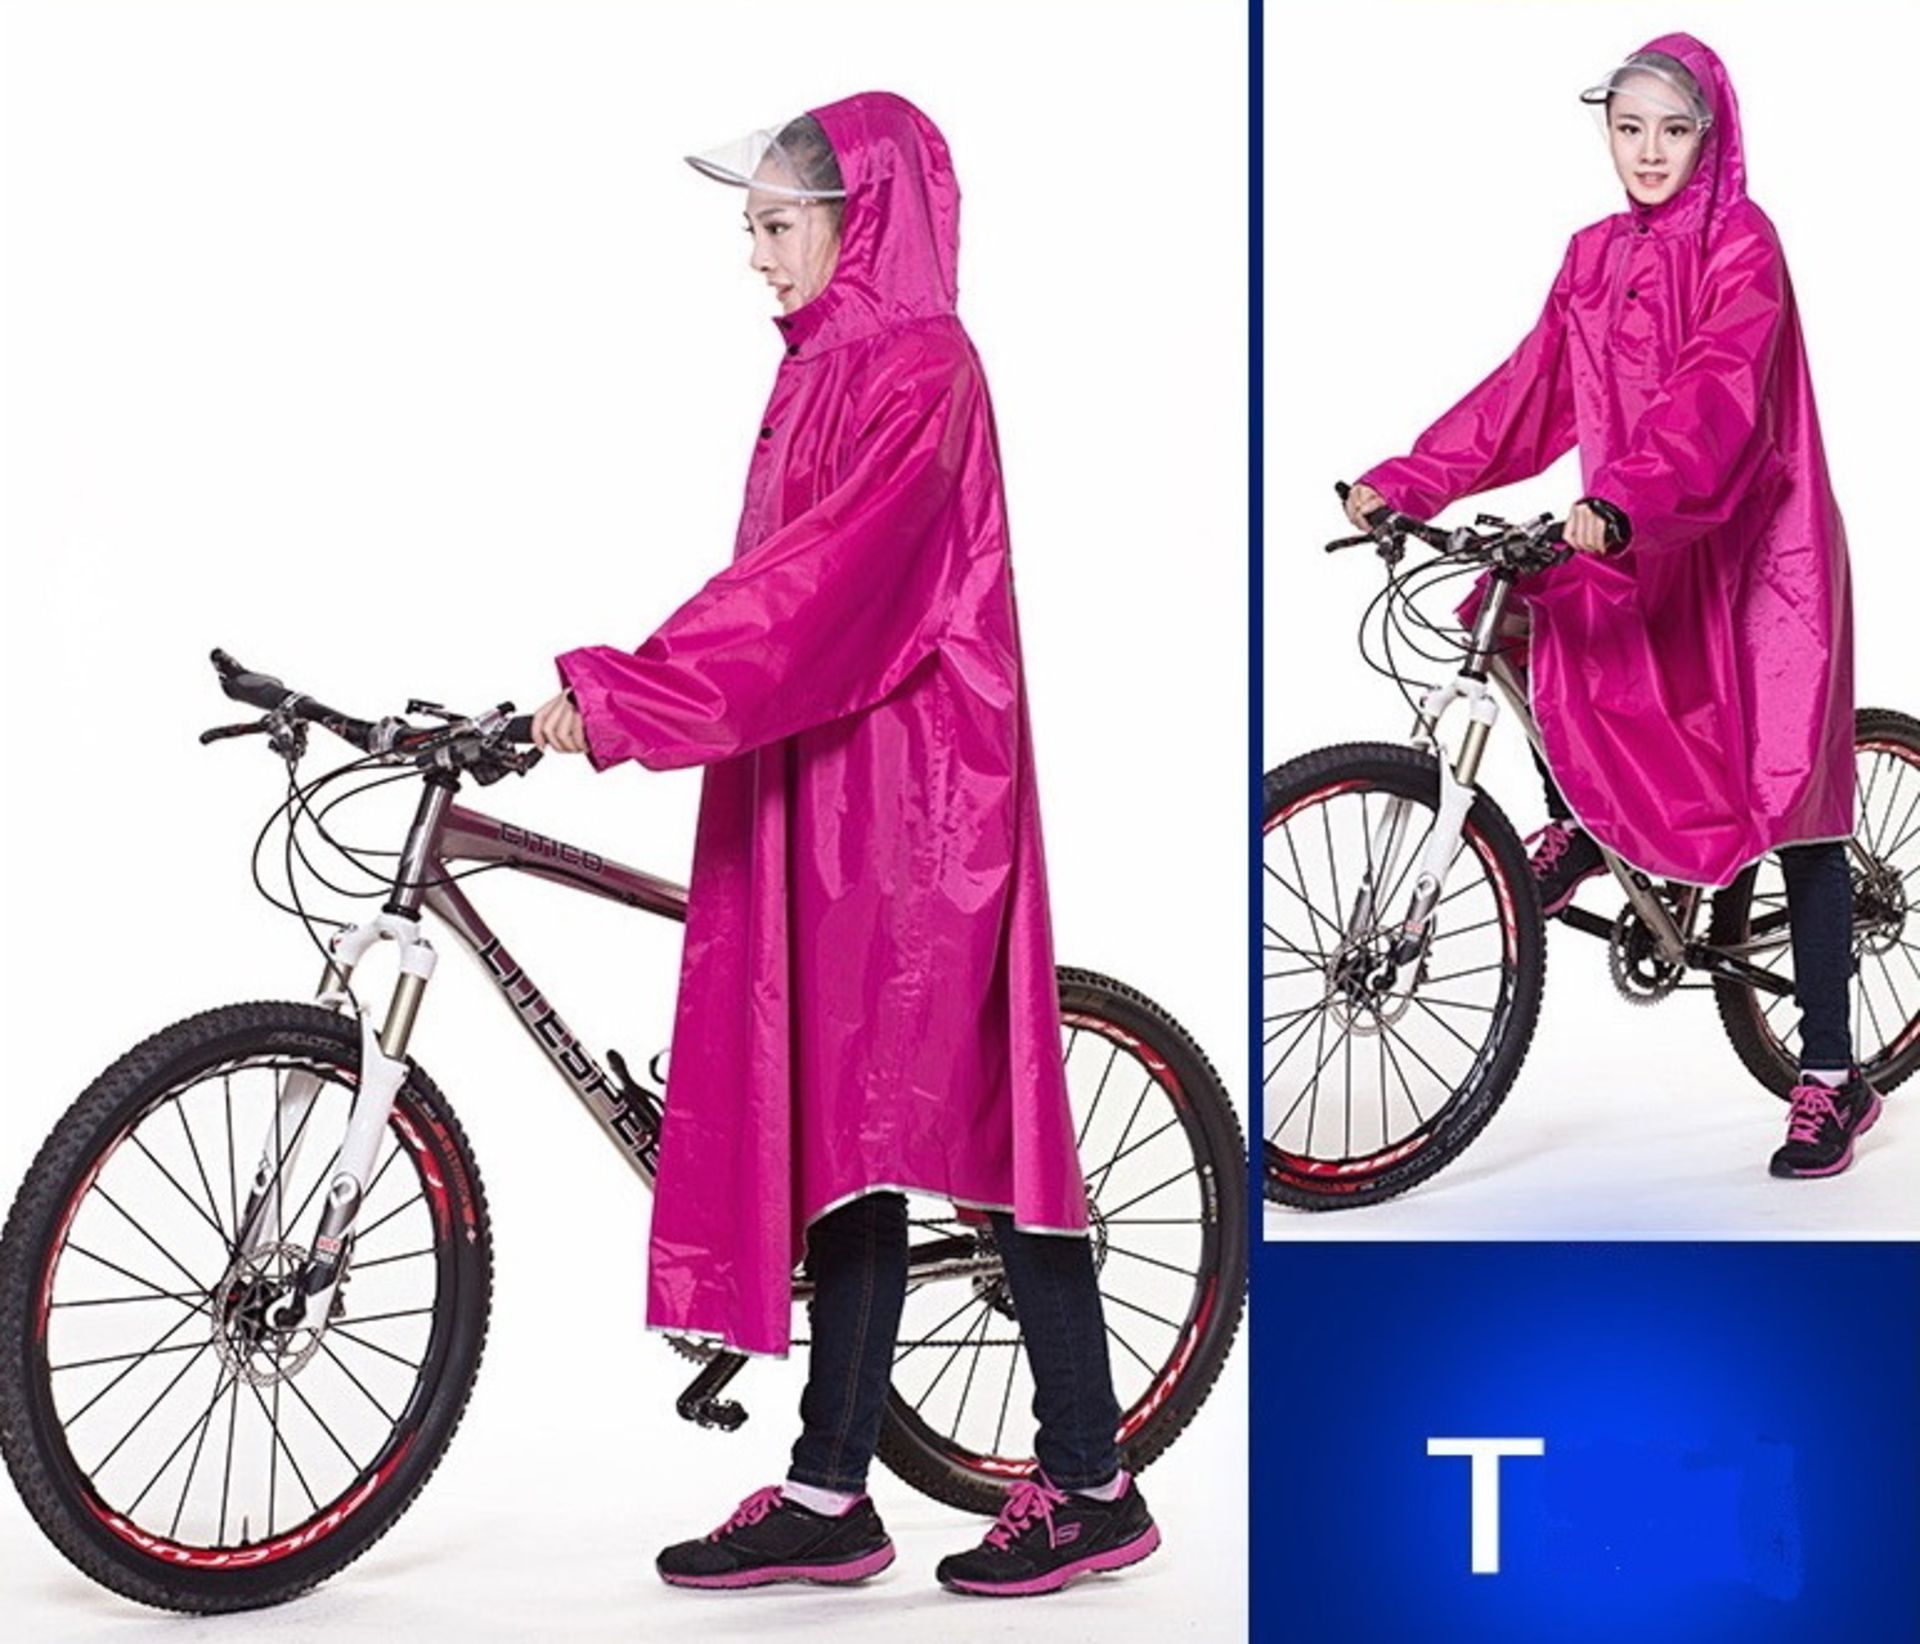 2 x bike ponchos - one purple,